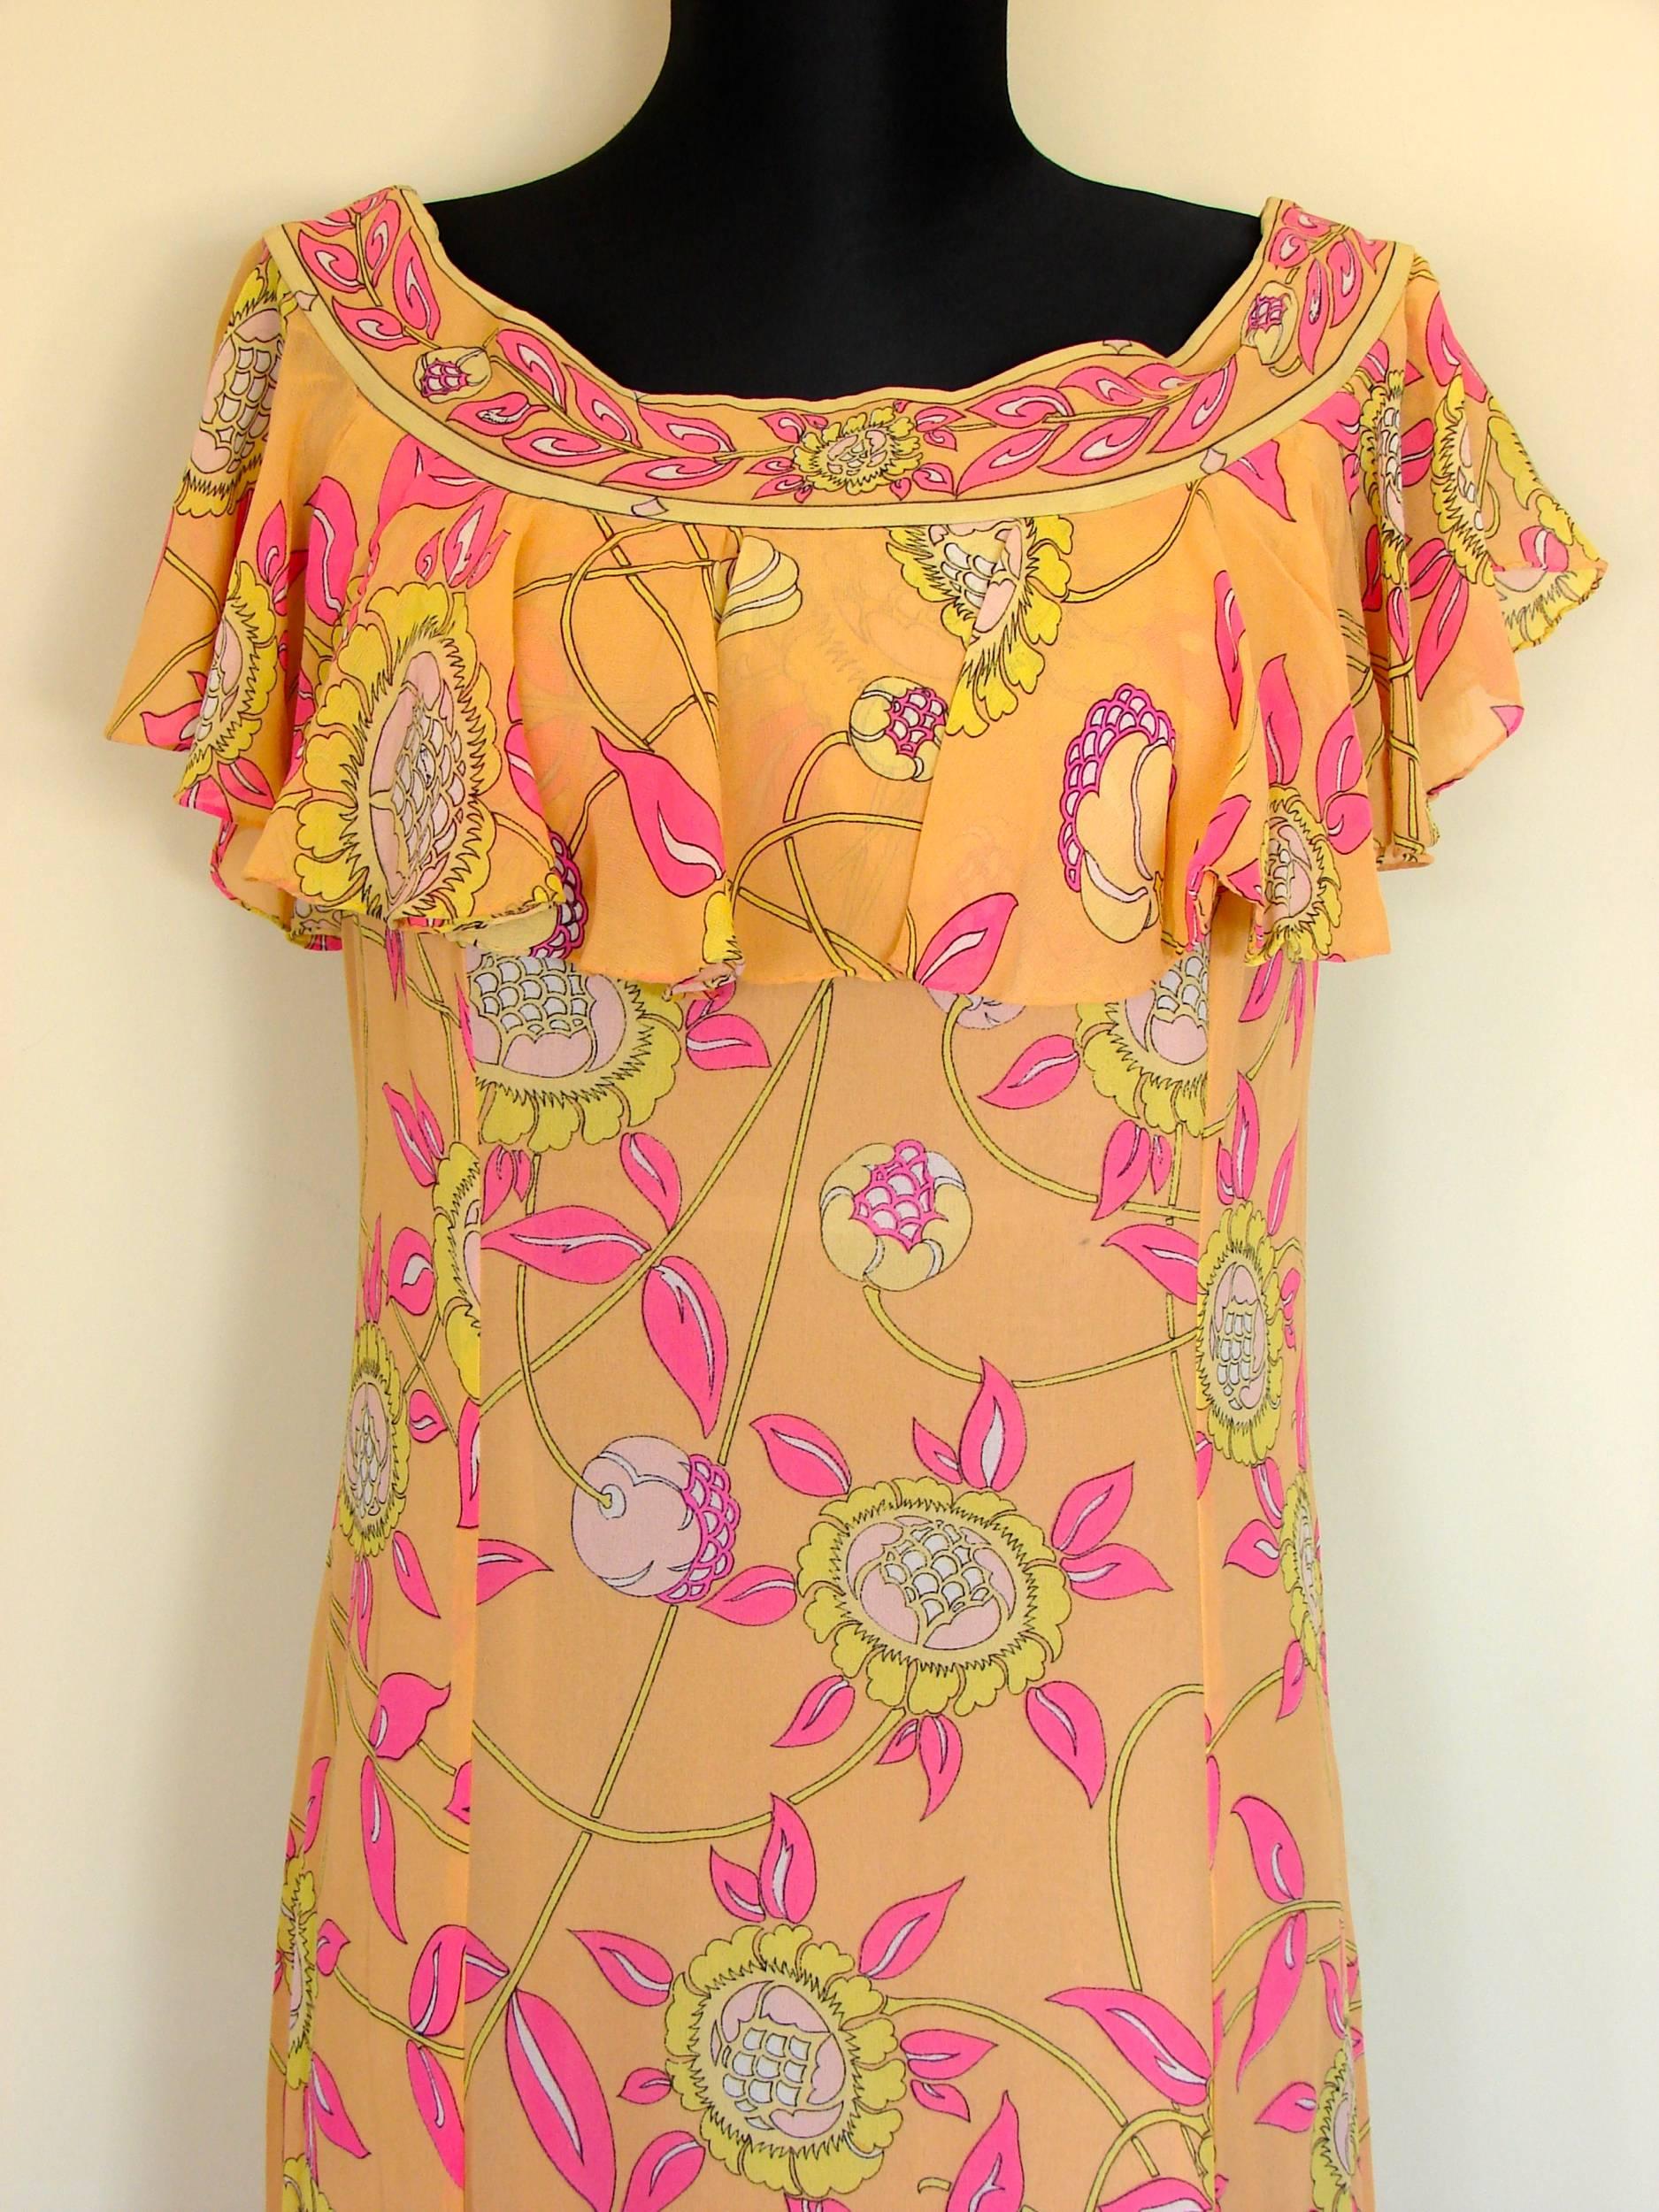 Emilio Pucci Silk Chiffon Ruffle Maxi Dress Bright Sunflower Print Deadstock 70s 1